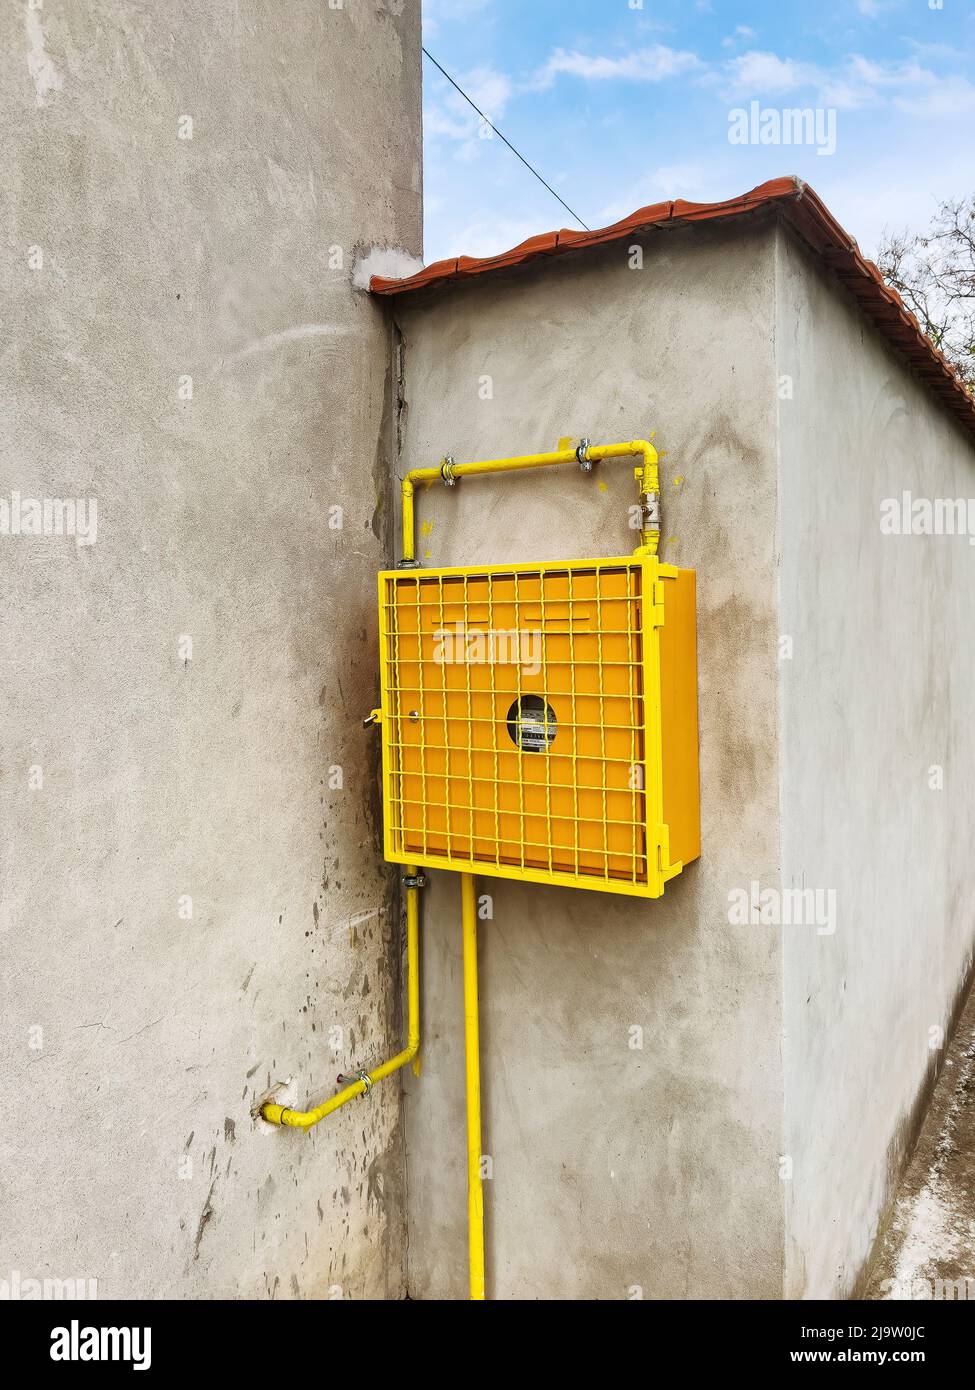 Misuratore di gas montato sulla parete della casa in involucro protettivo giallo Foto Stock